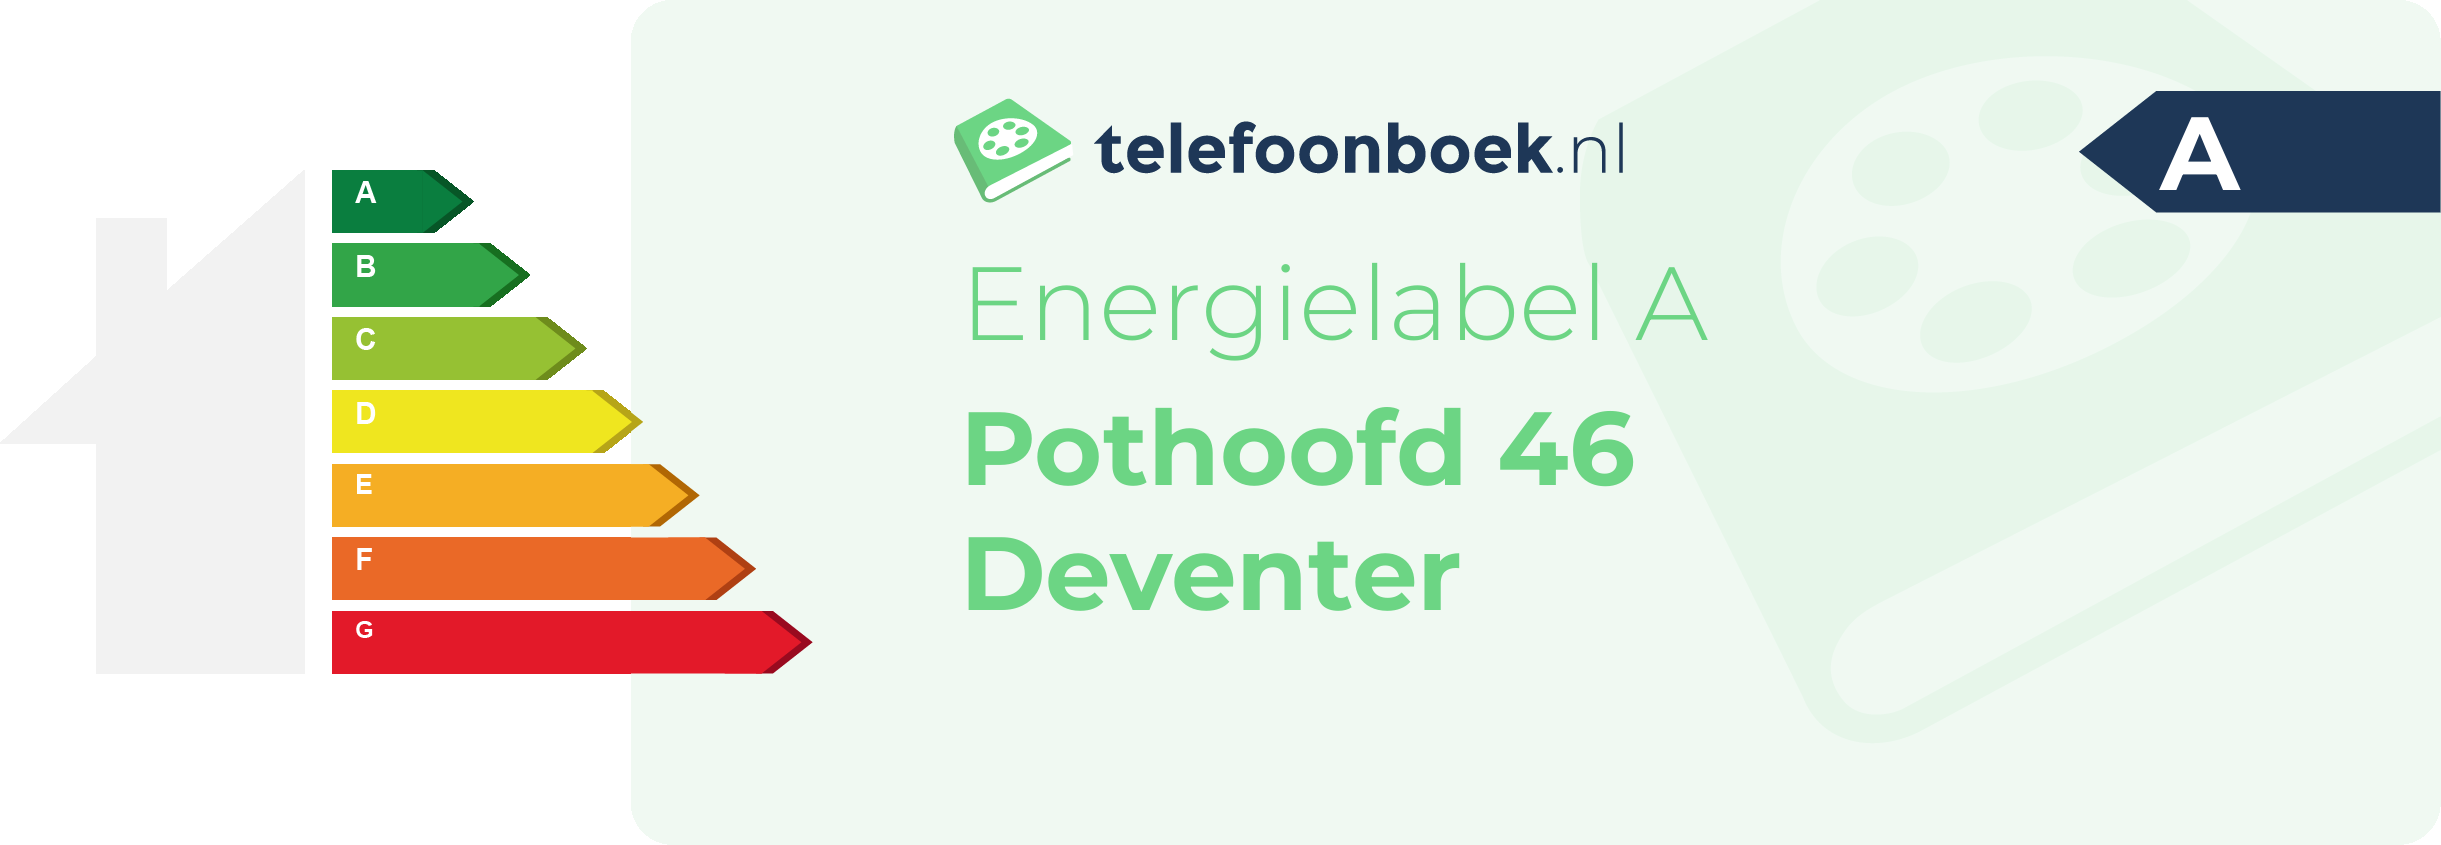 Energielabel Pothoofd 46 Deventer